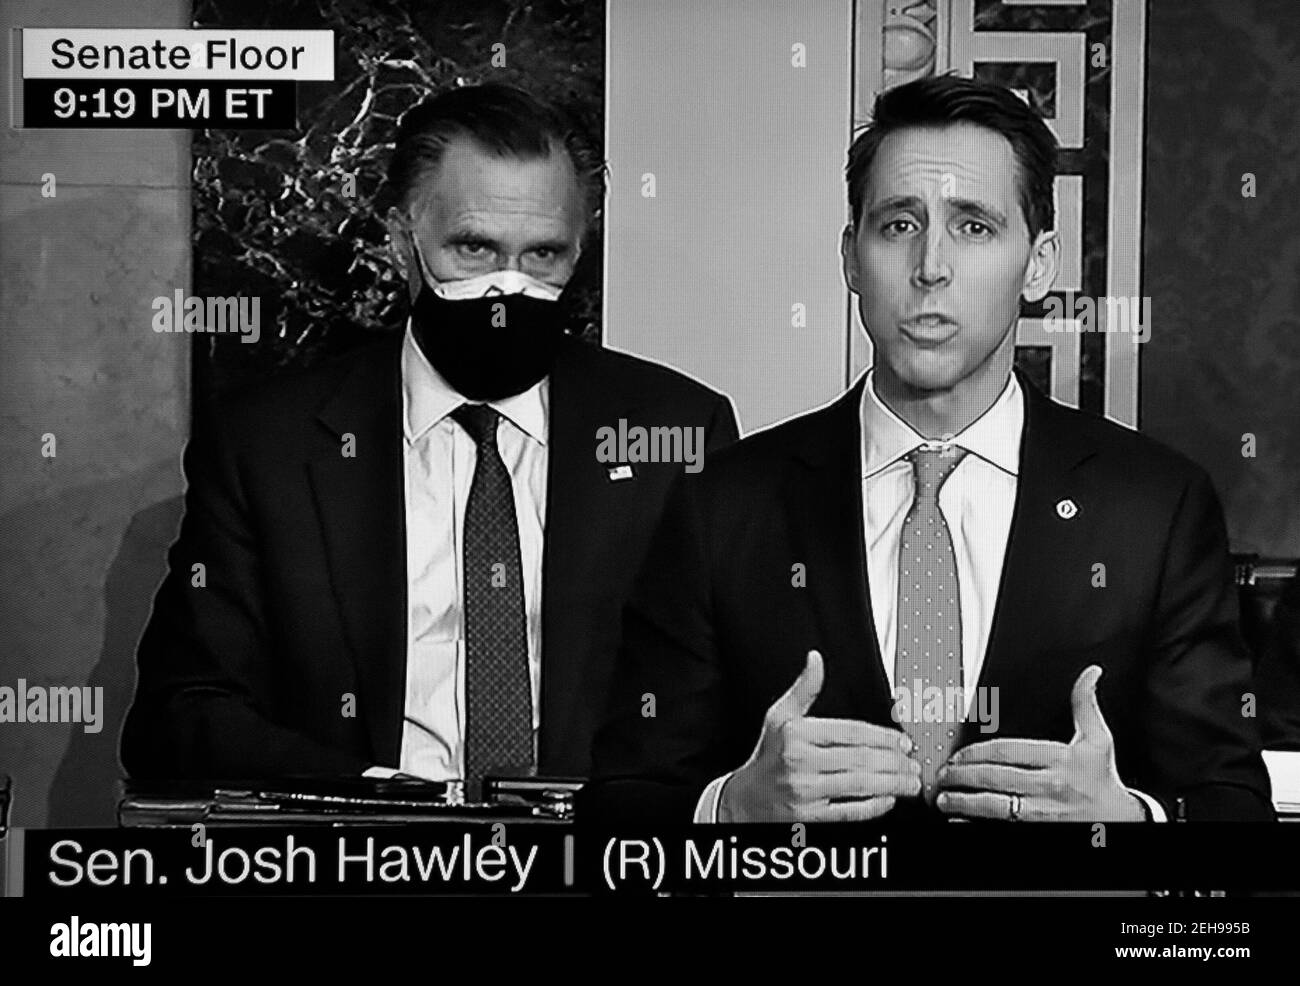 Ein CNN-Screenshot US-Senator Josh Hawley vor dem Senat nach Befürwortern von Präsident Trump gestört die Zählung der Wahlkollegium Stimmen. Stockfoto